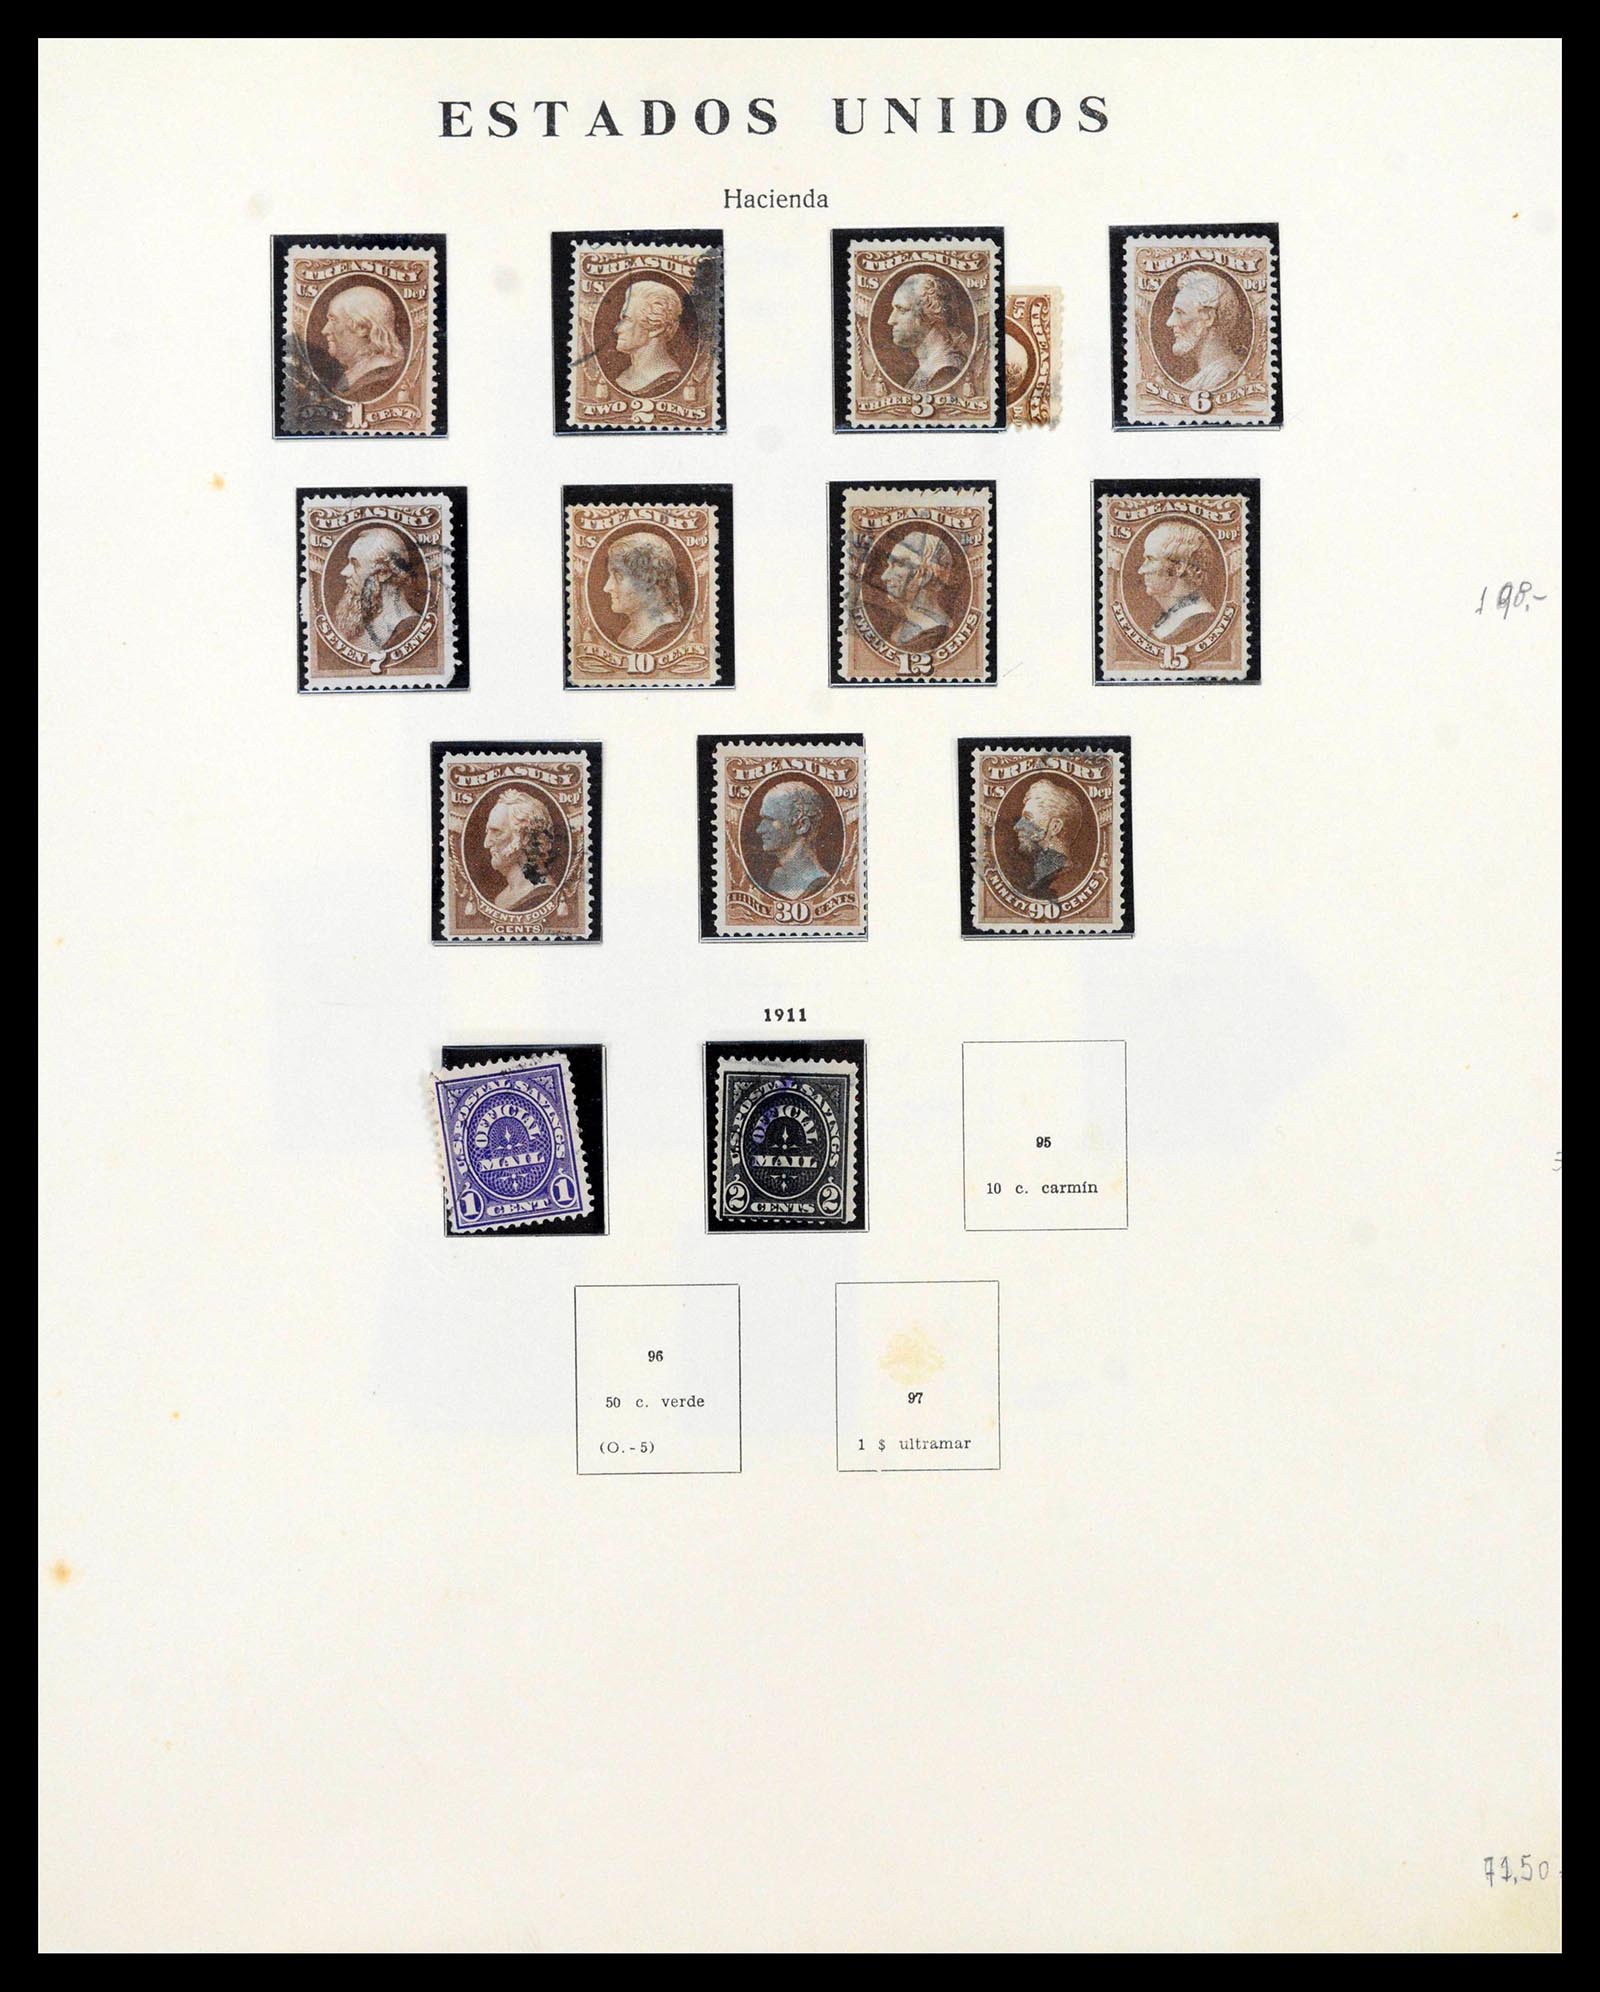 39190 0082 - Stamp collection 39190 USA 1851-1975.